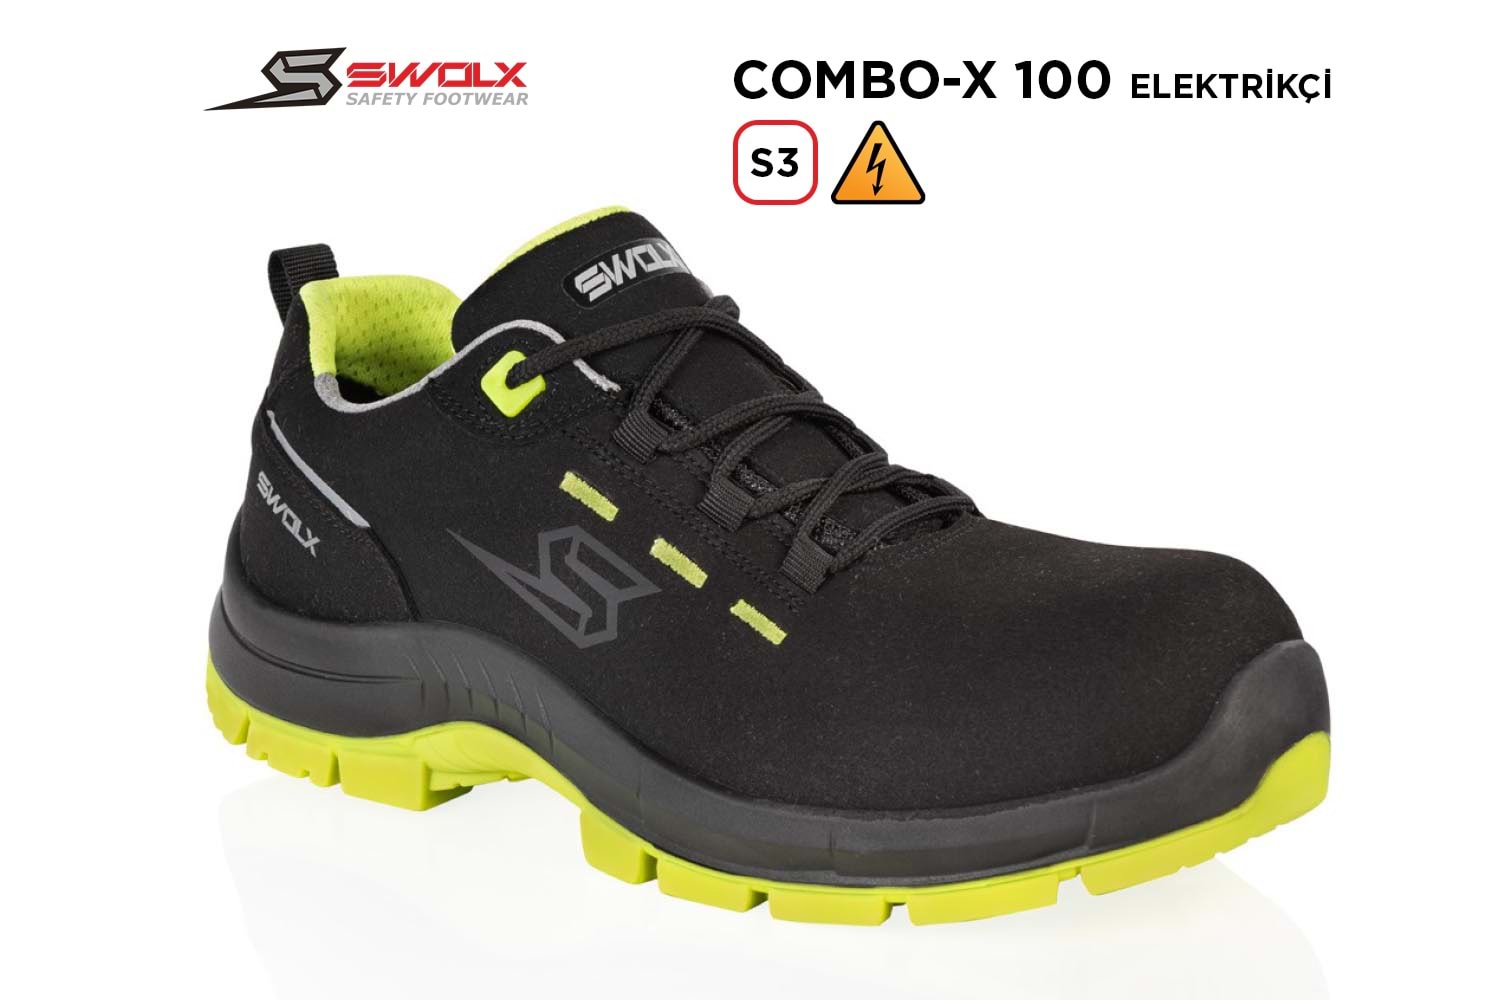 Swolx İş Ayakkabısı - Combo-X 100 S3 Elektrikçi - 41